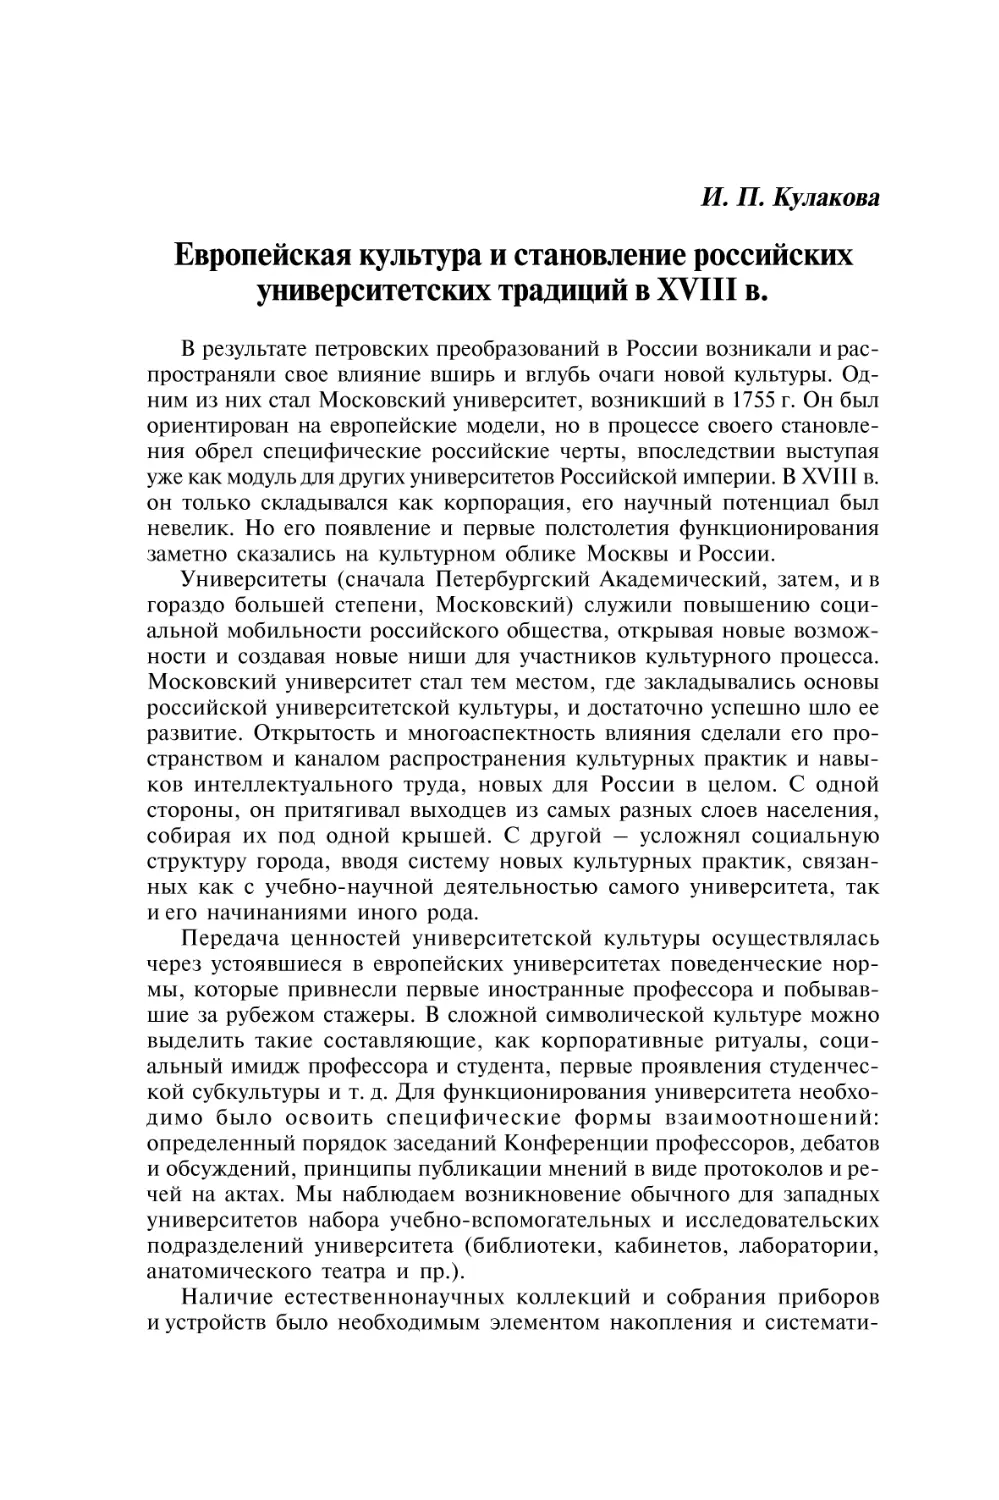 Кулакова И.П. Европейская культура и становление российских университетских традиций в XVIII в.